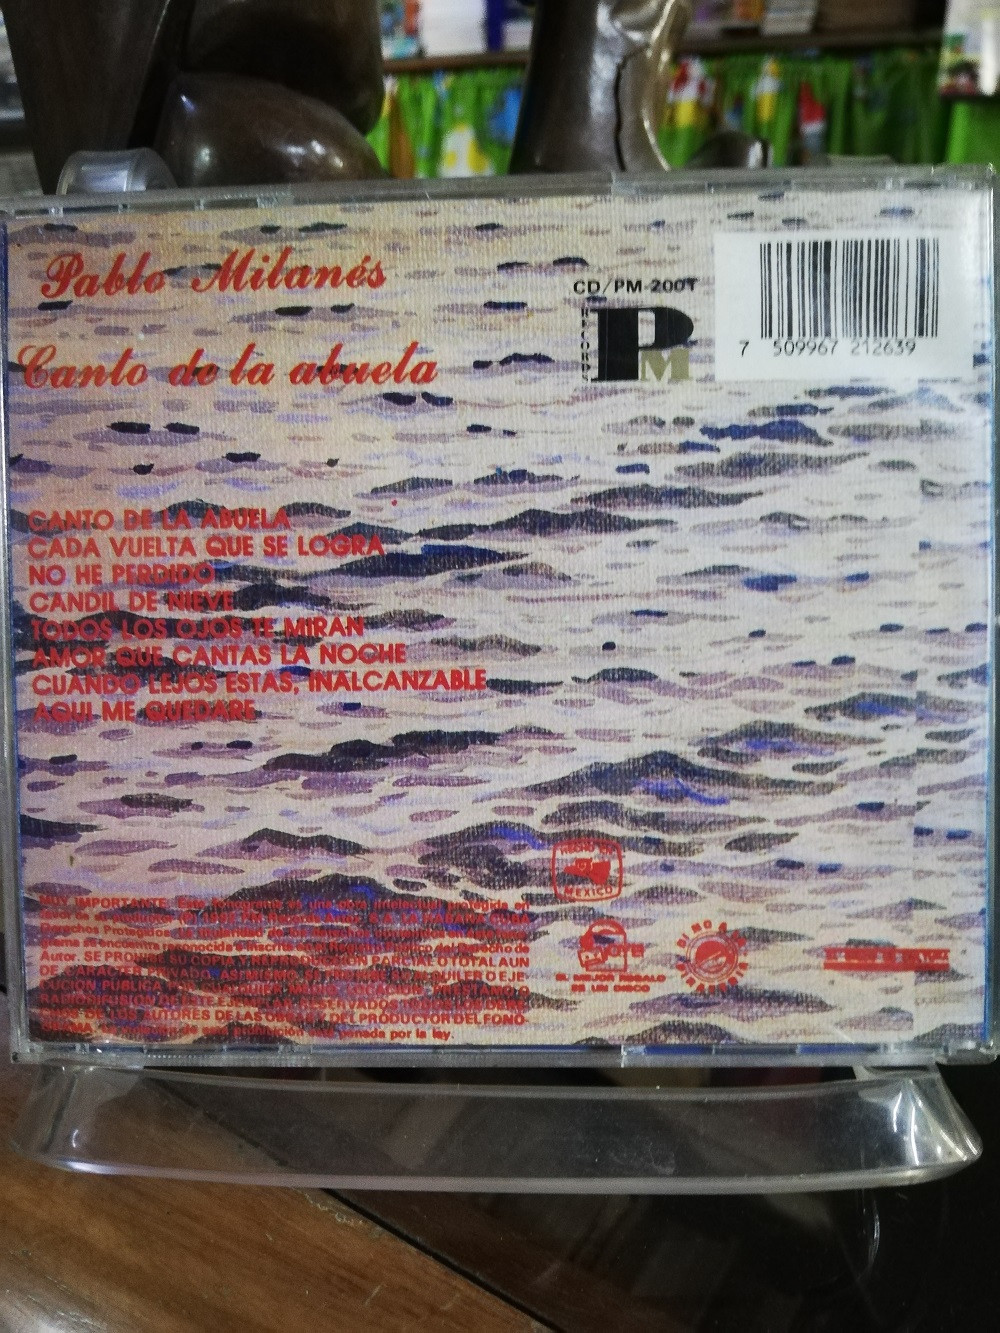 Imagen CD PABLO MILANES - CANTO DE LA ABUELA 2